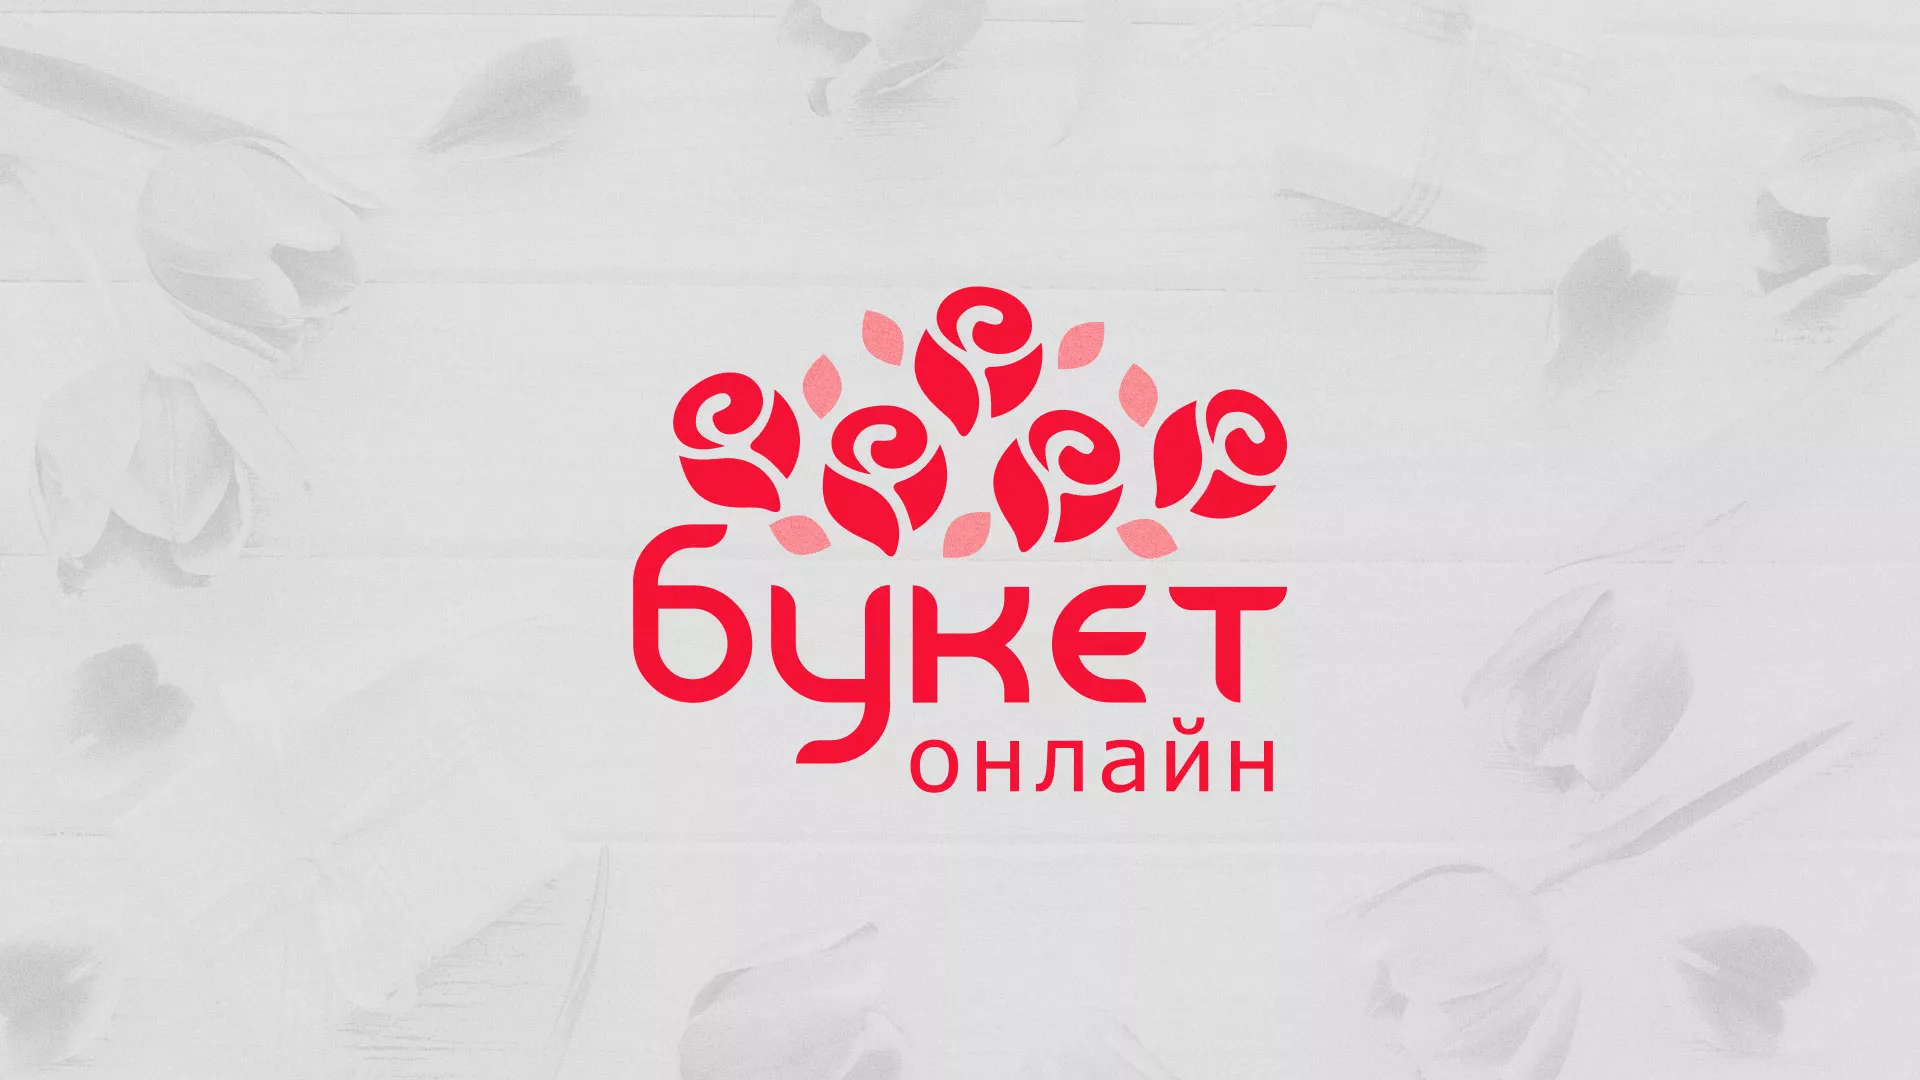 Создание интернет-магазина «Букет-онлайн» по цветам в Балабаново